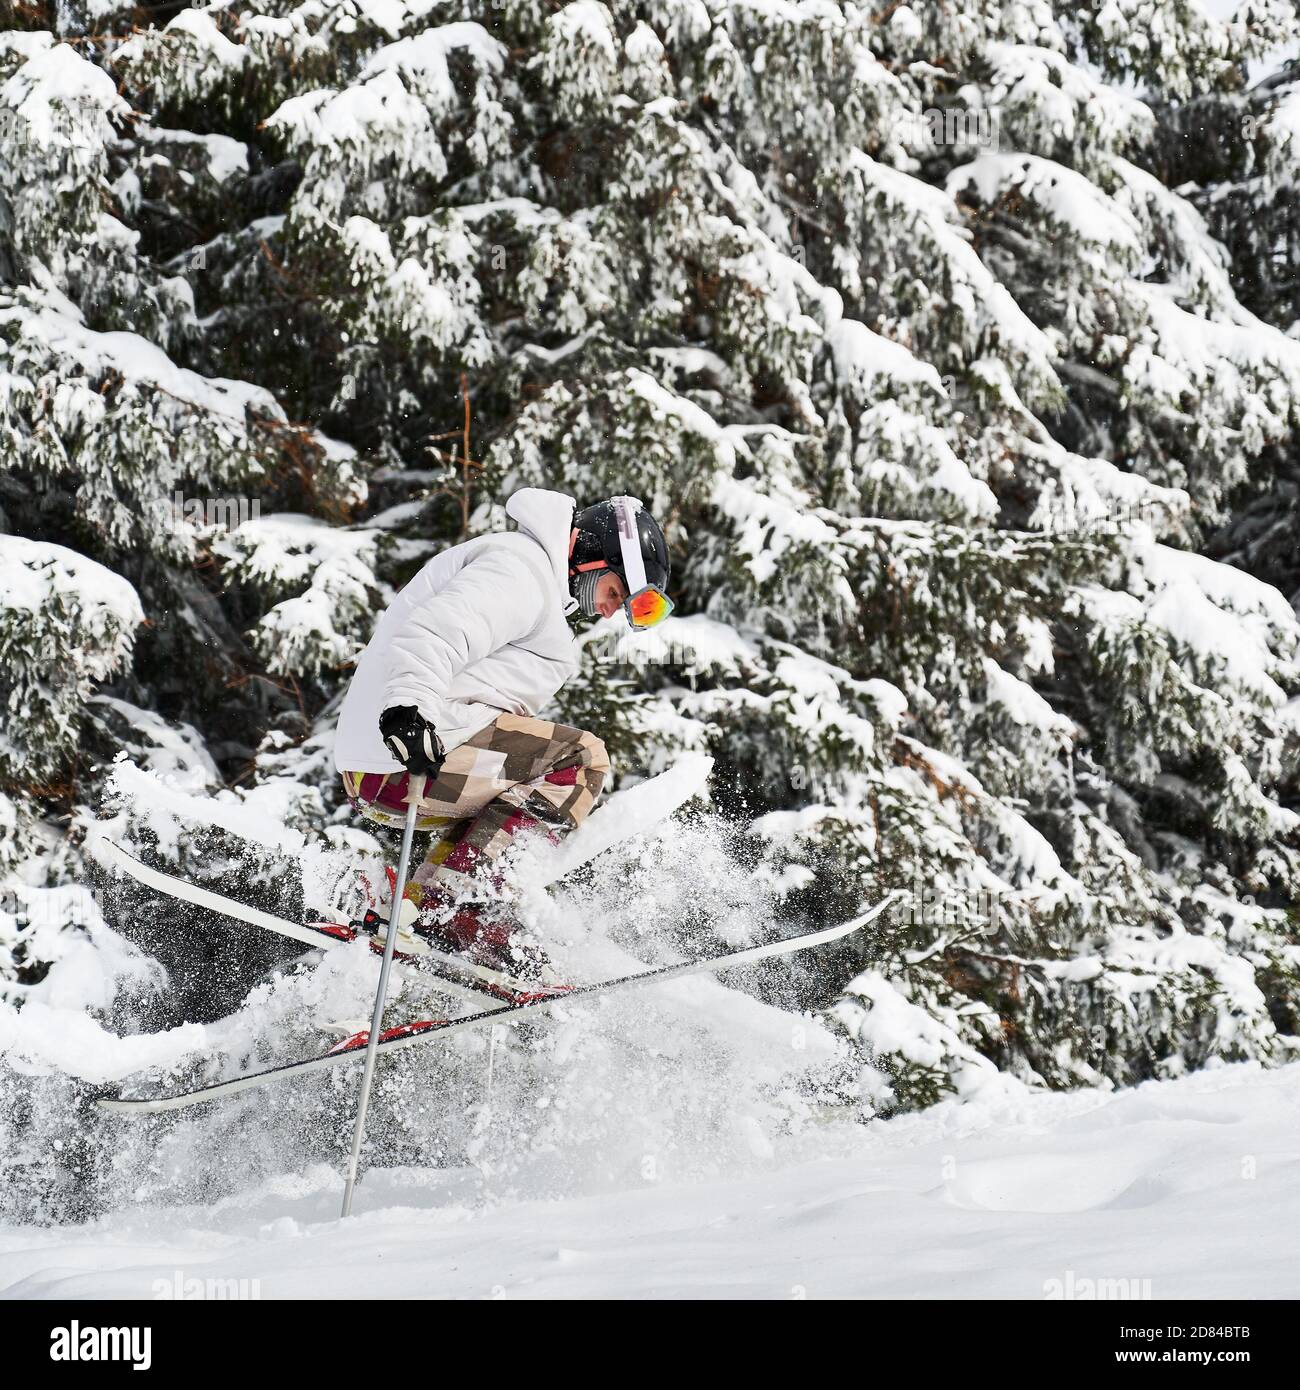 Skifahrer macht Tricks in den Bergen in der Wintersaison, Springen auf Hang mit schönen schneebedeckten Fichtenwald Hintergrund verschmolzen. Seitenansicht. Konzept der Winter Arten von Sport. Stockfoto